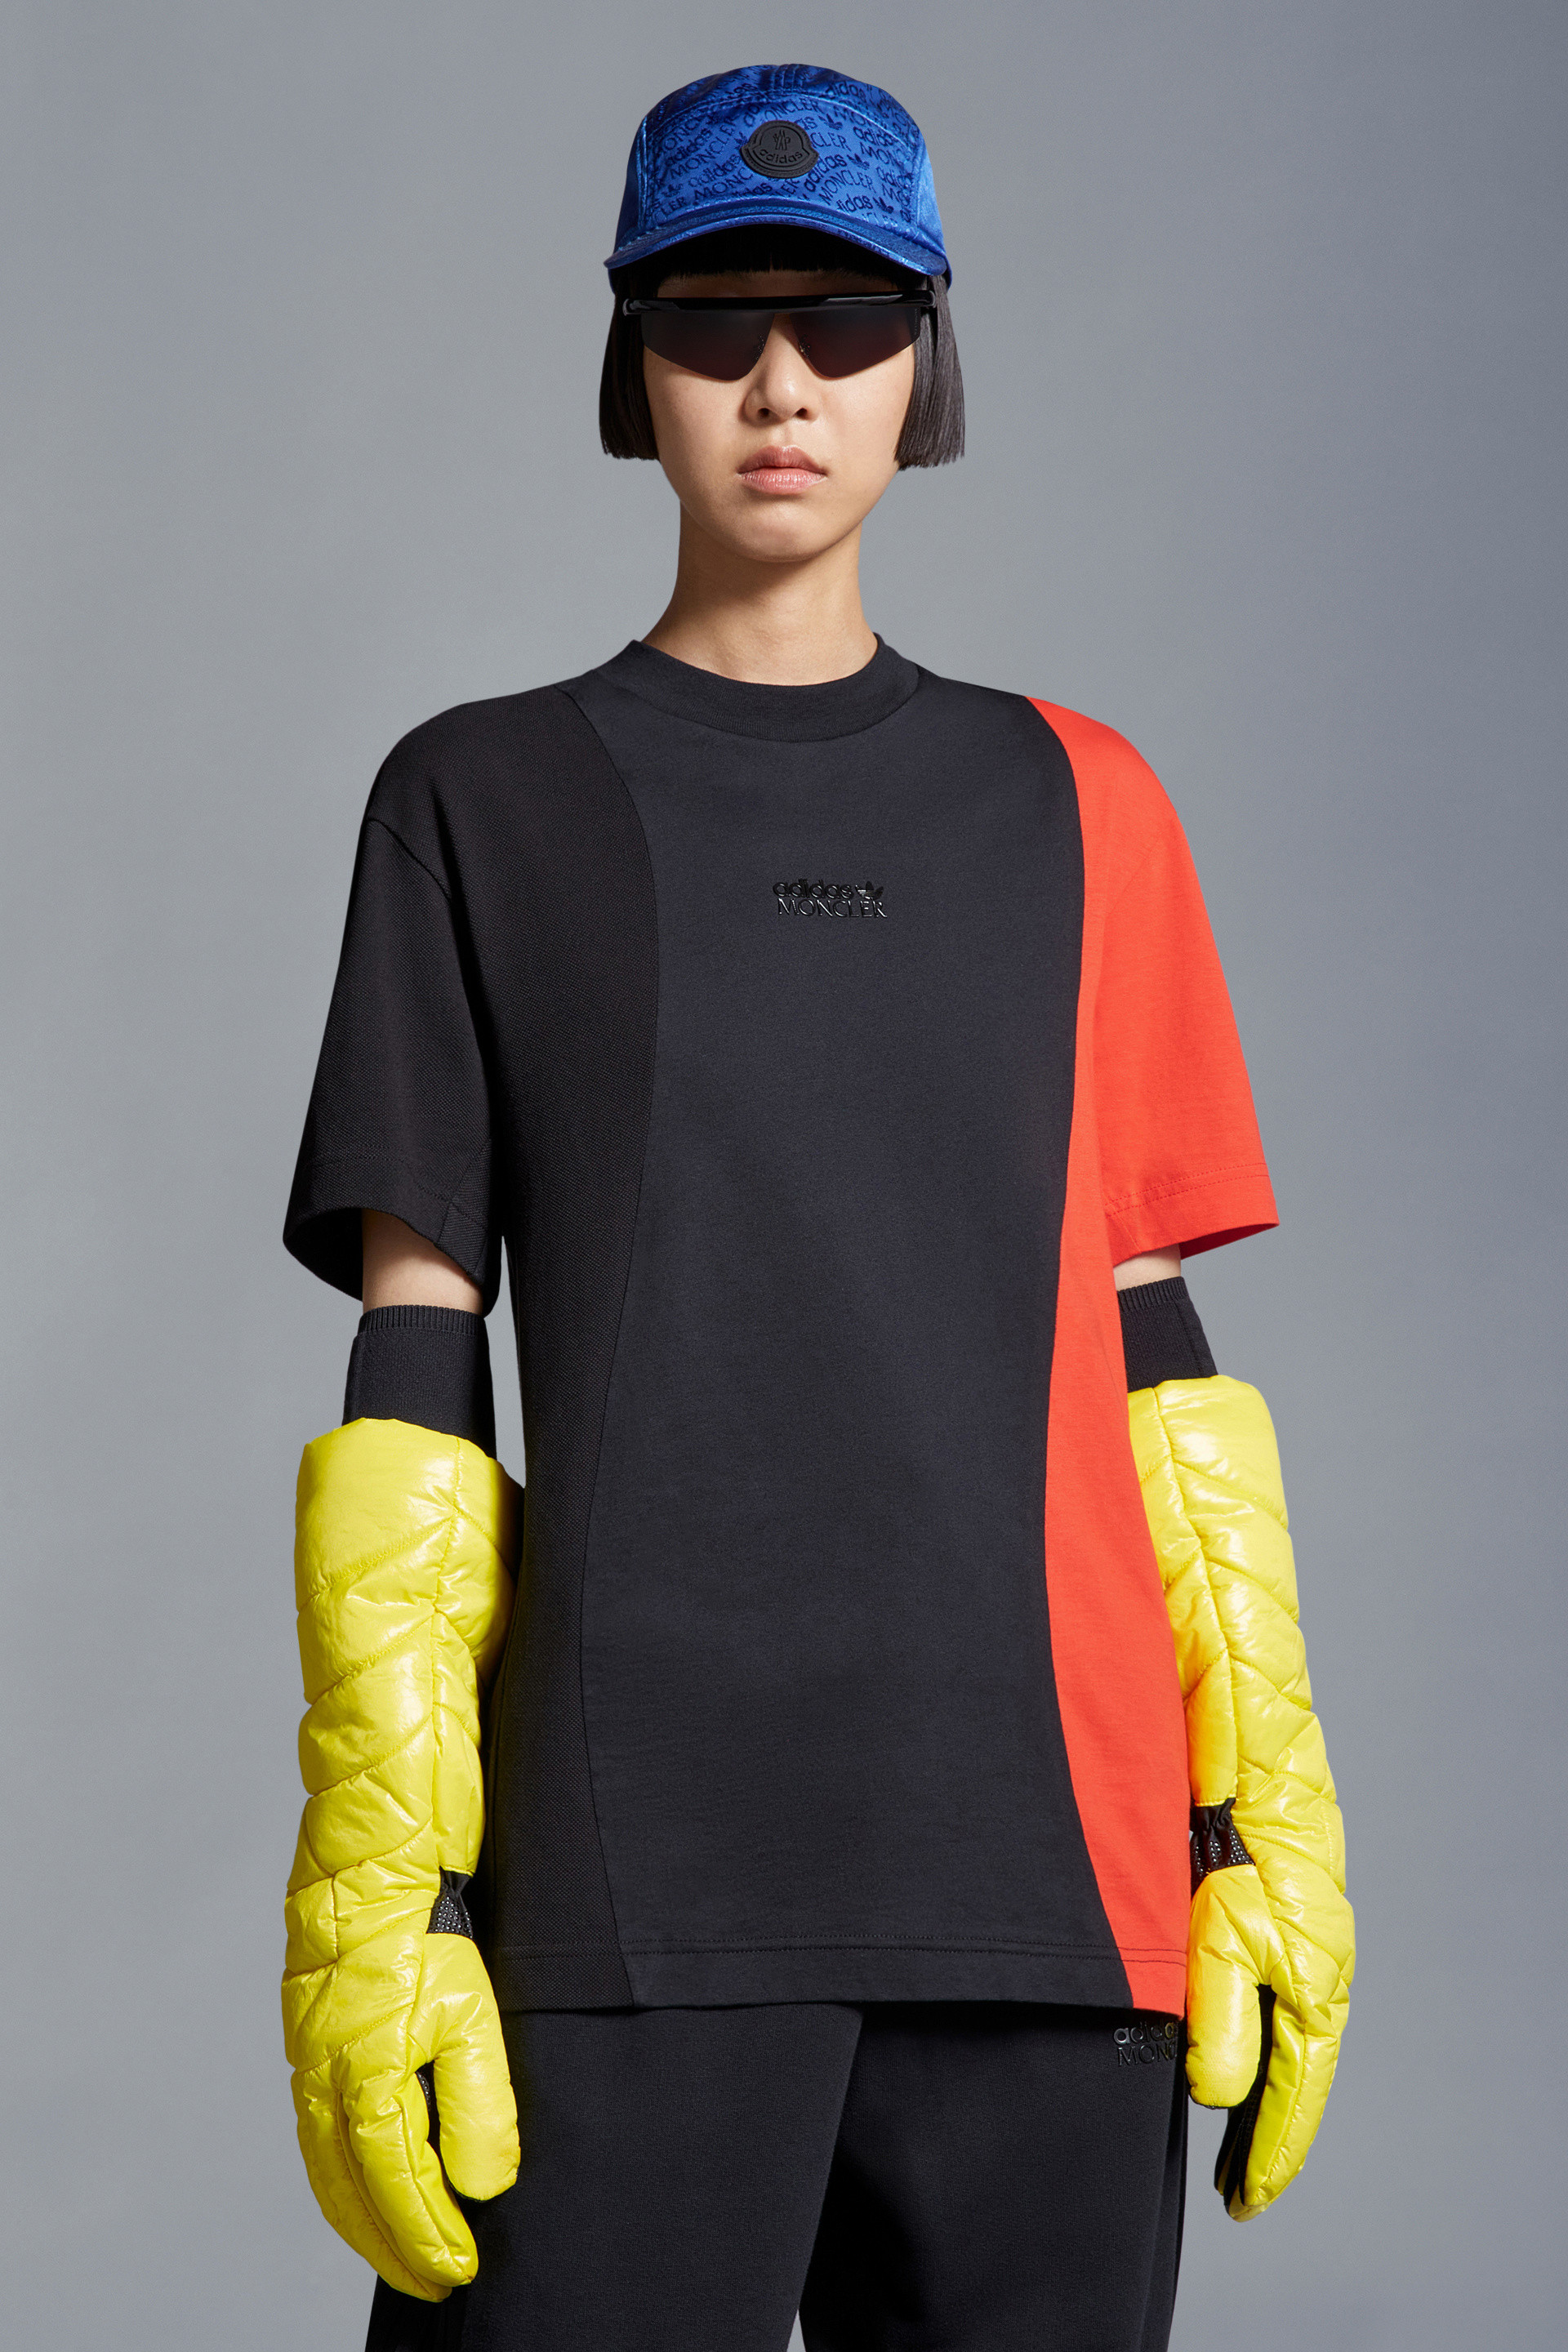 オレンジ & ブラック Tシャツ : Moncler x adidas Originals 向けの